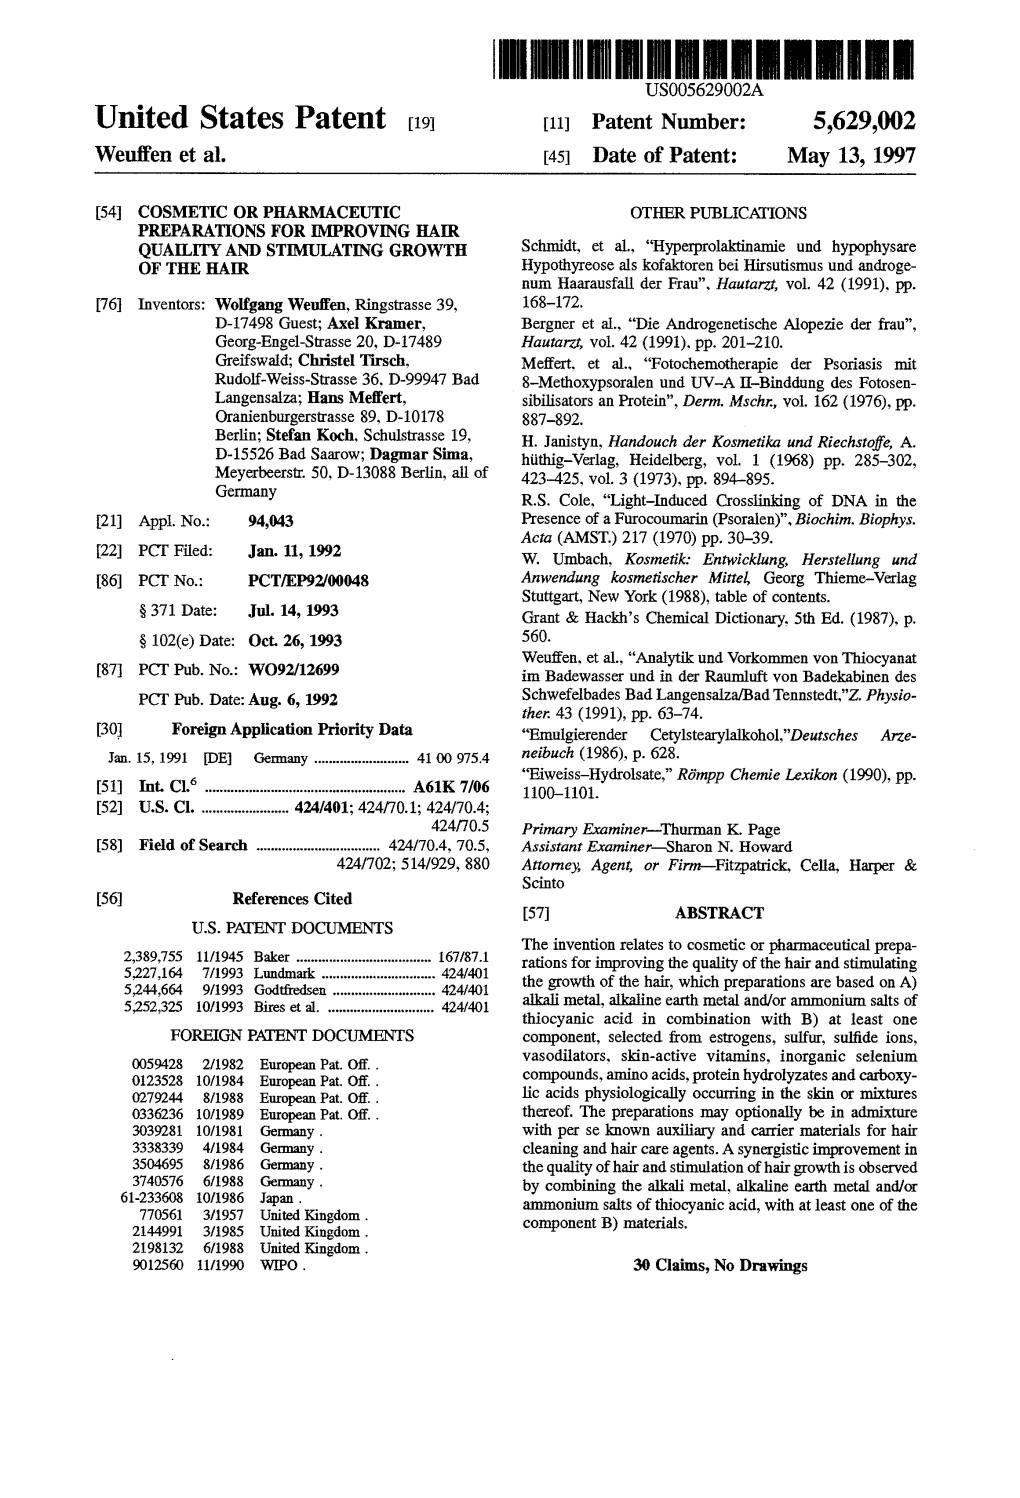 United States Patent 19 11 Patent Number: 5,629,002 Weufen Et Al